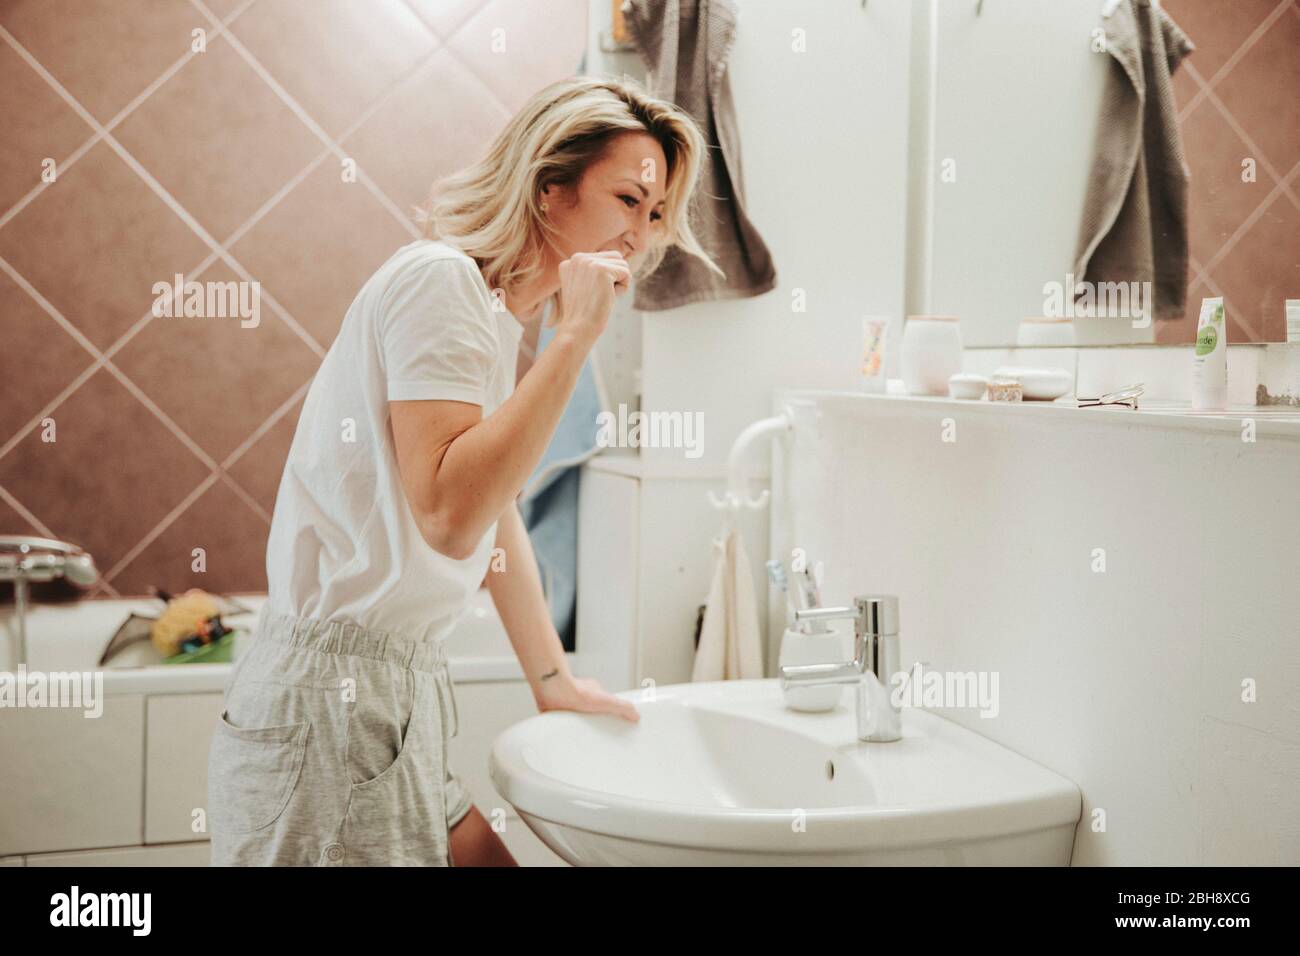 Frau beim Zähne putzen im Bad Stock Photo